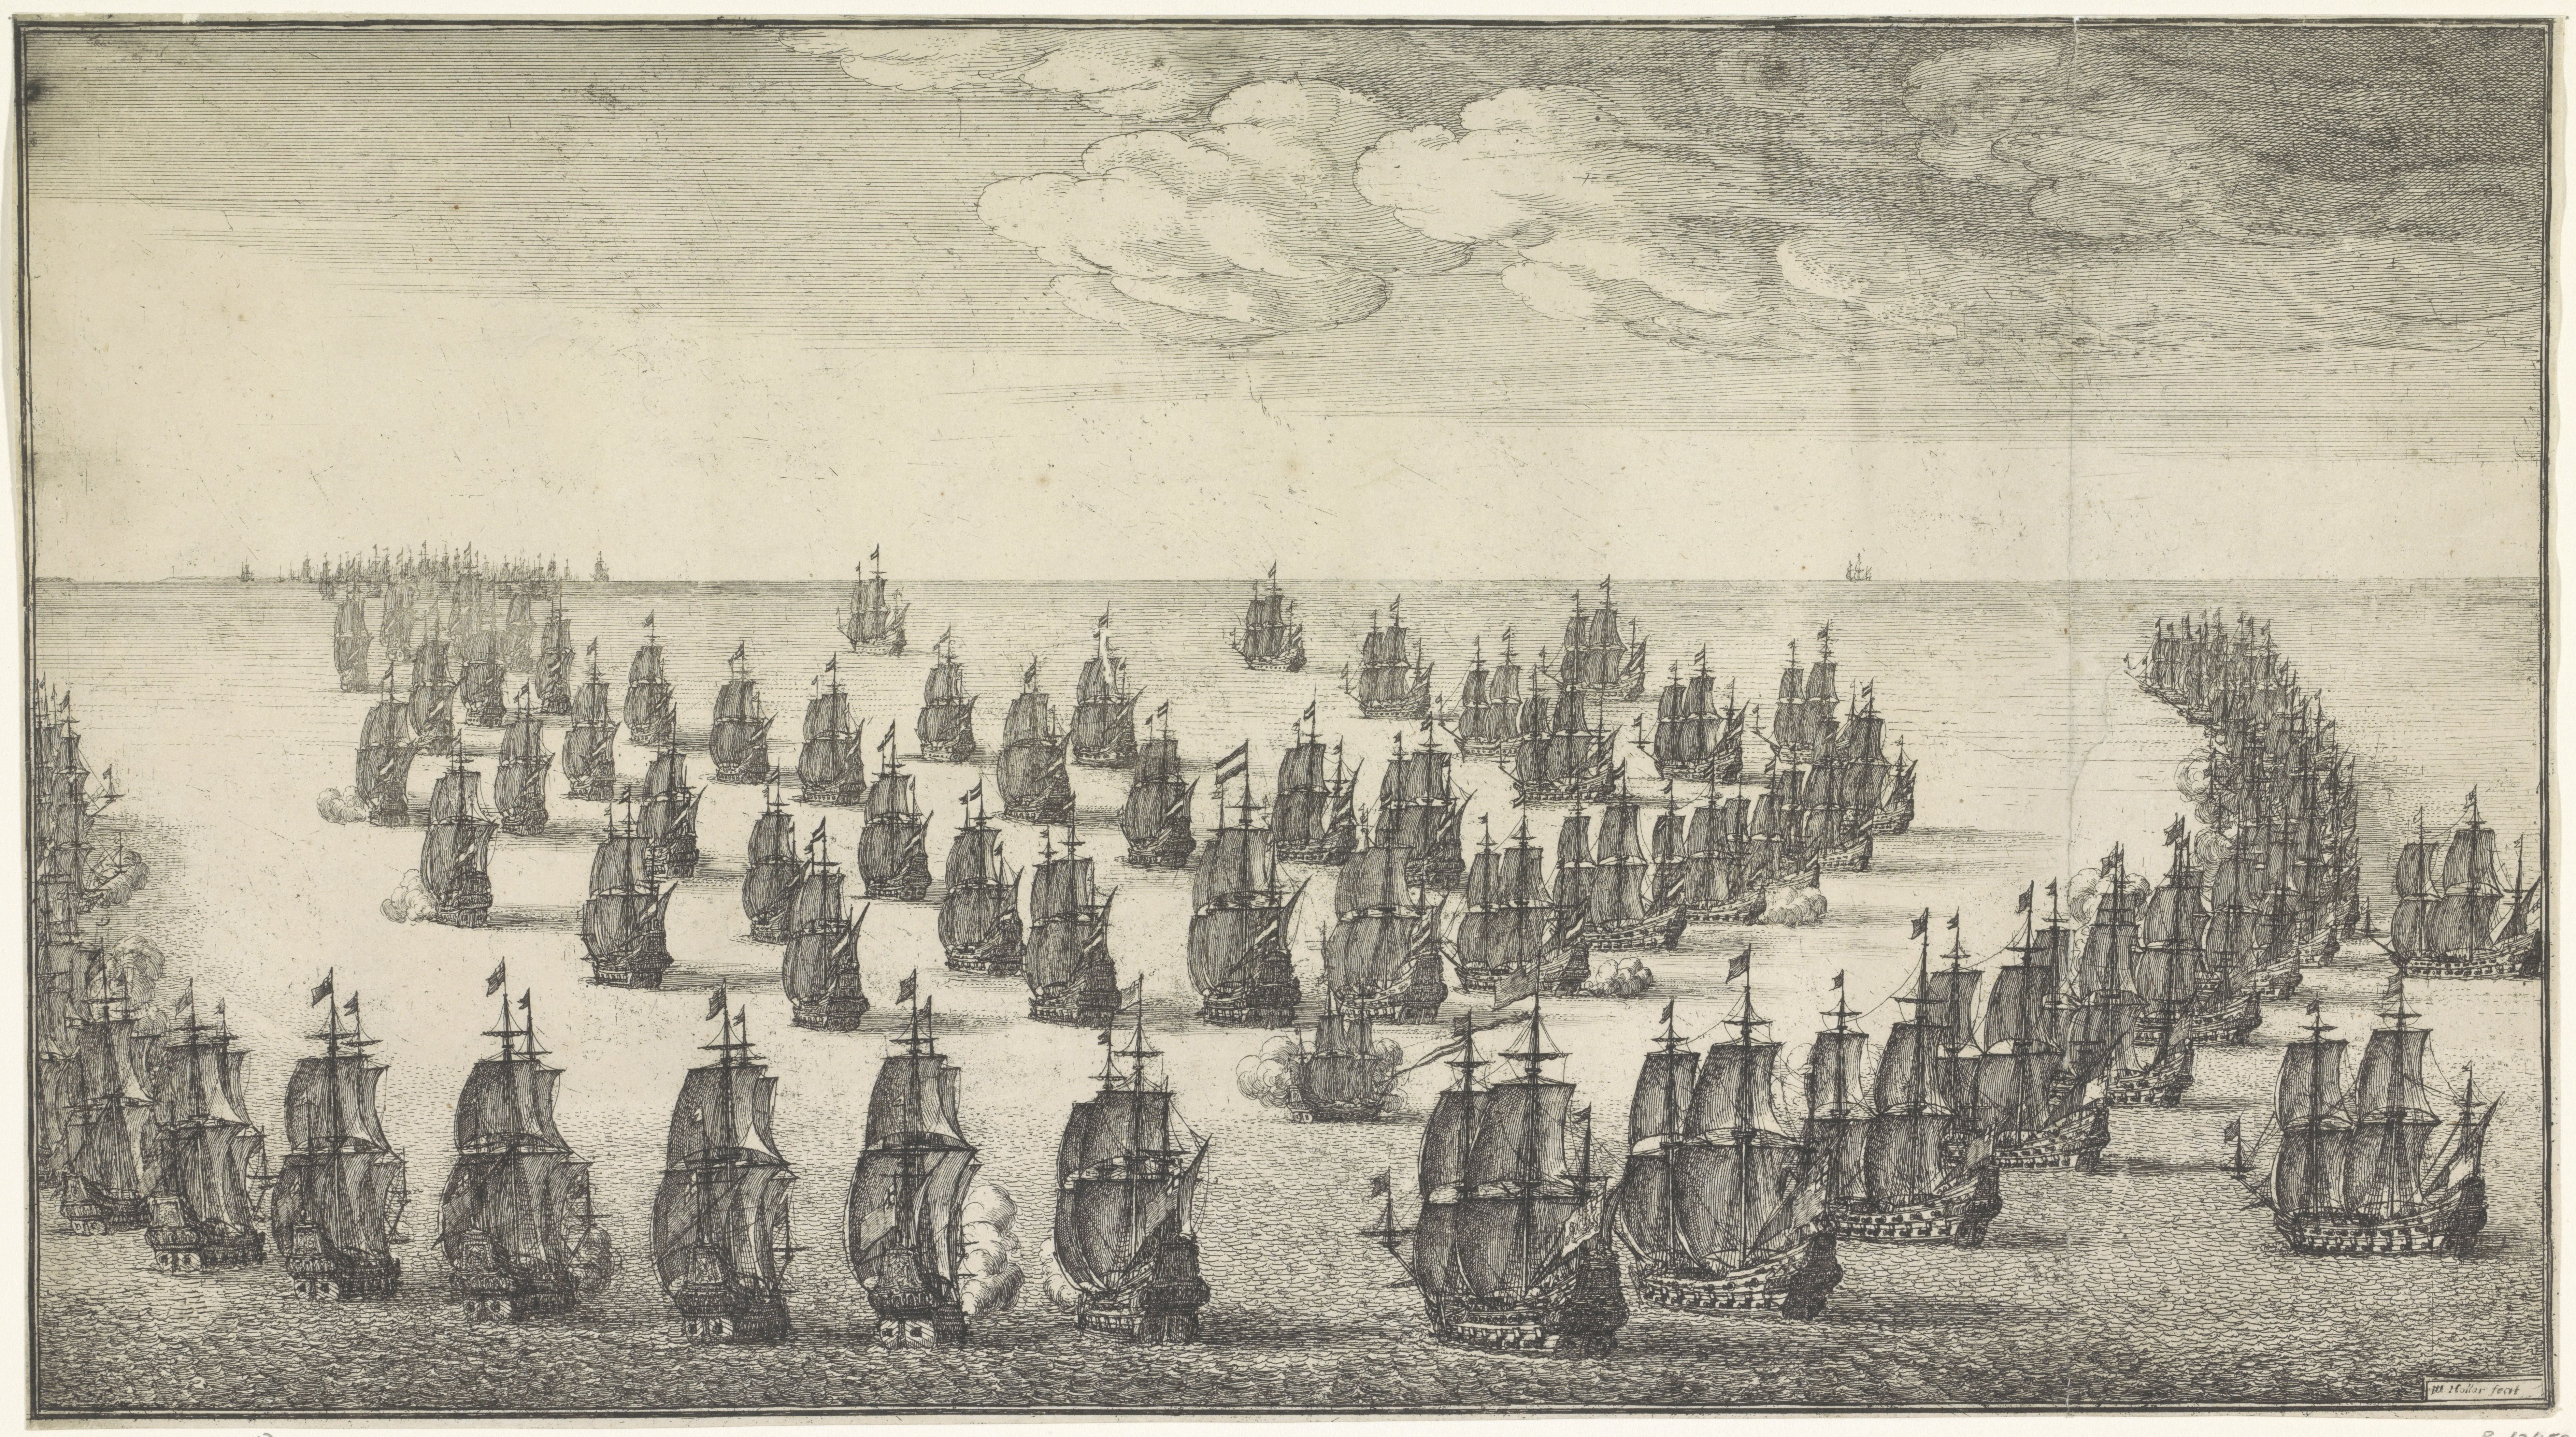 Zeeslag tijdens de Tweede Engelse Oorlog, ets Wenceslaus Hollar, 1666, Collectie Rijksmuseum Amsterdam, RP-P-1920-2671(a3)